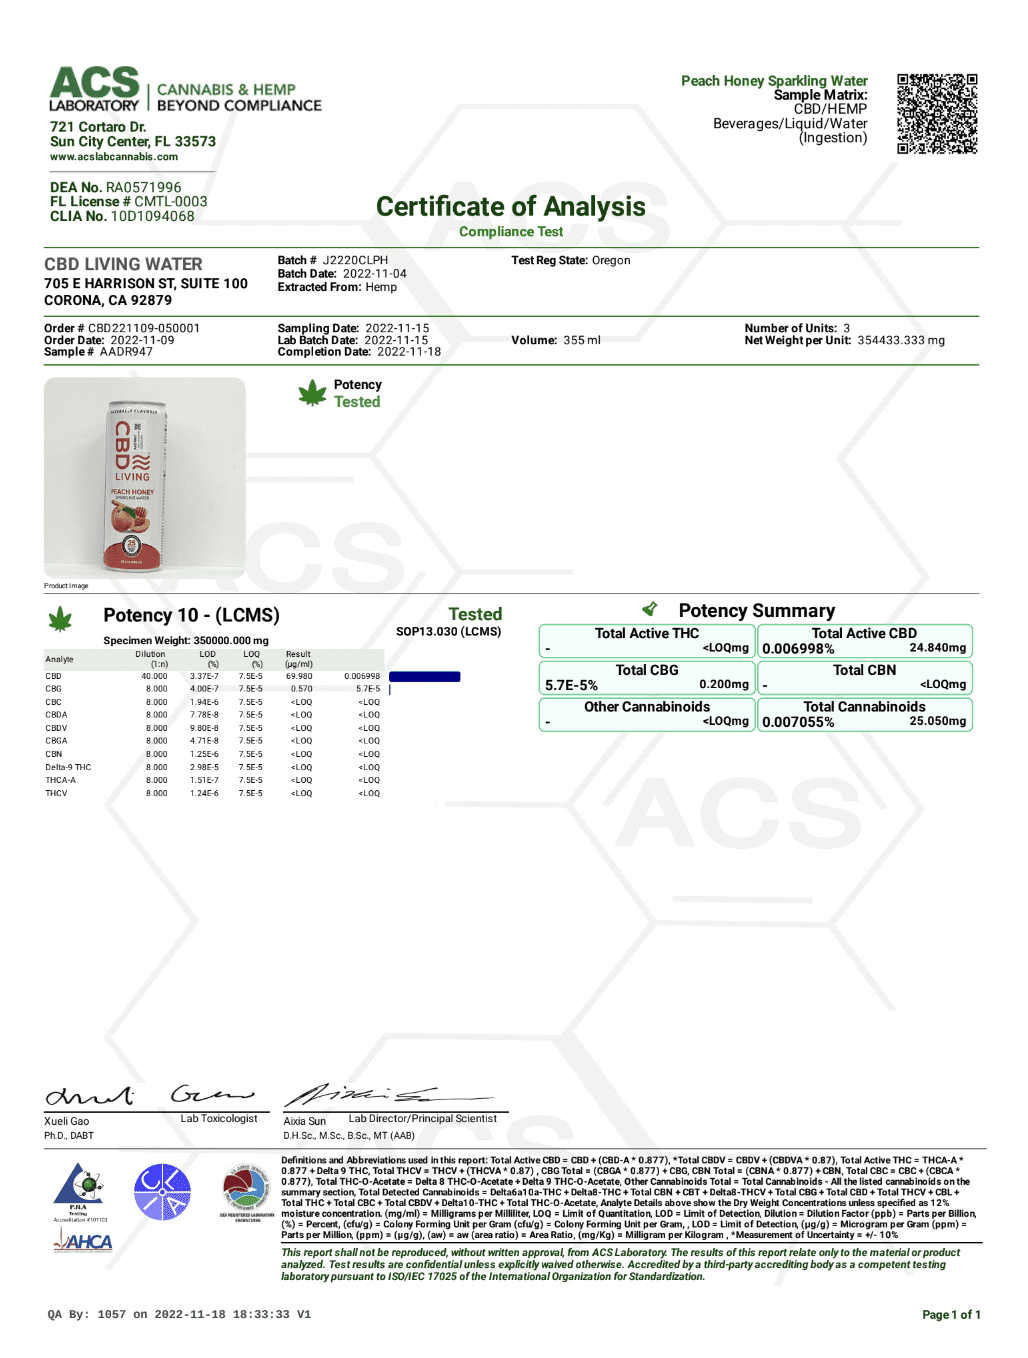 Peach Honey Certificate of Analysis